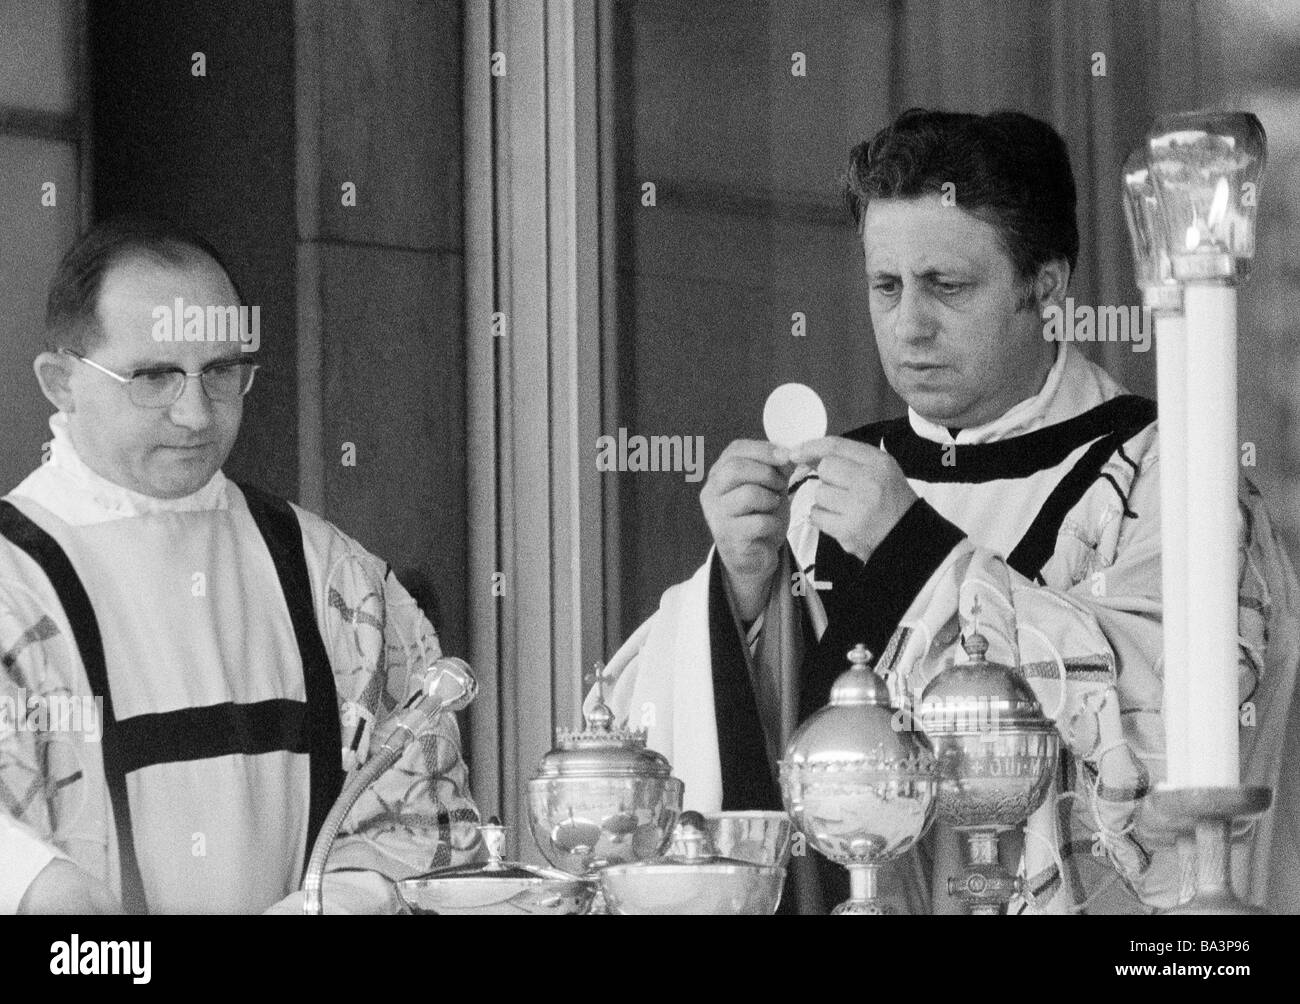 Negli anni settanta, foto in bianco e nero, la religione, il cristianesimo, Santa Messa, Eucaristia sacerdote mantiene la comunione fetta, a parte un accolito, di età compresa tra 40 a 50 anni Foto Stock